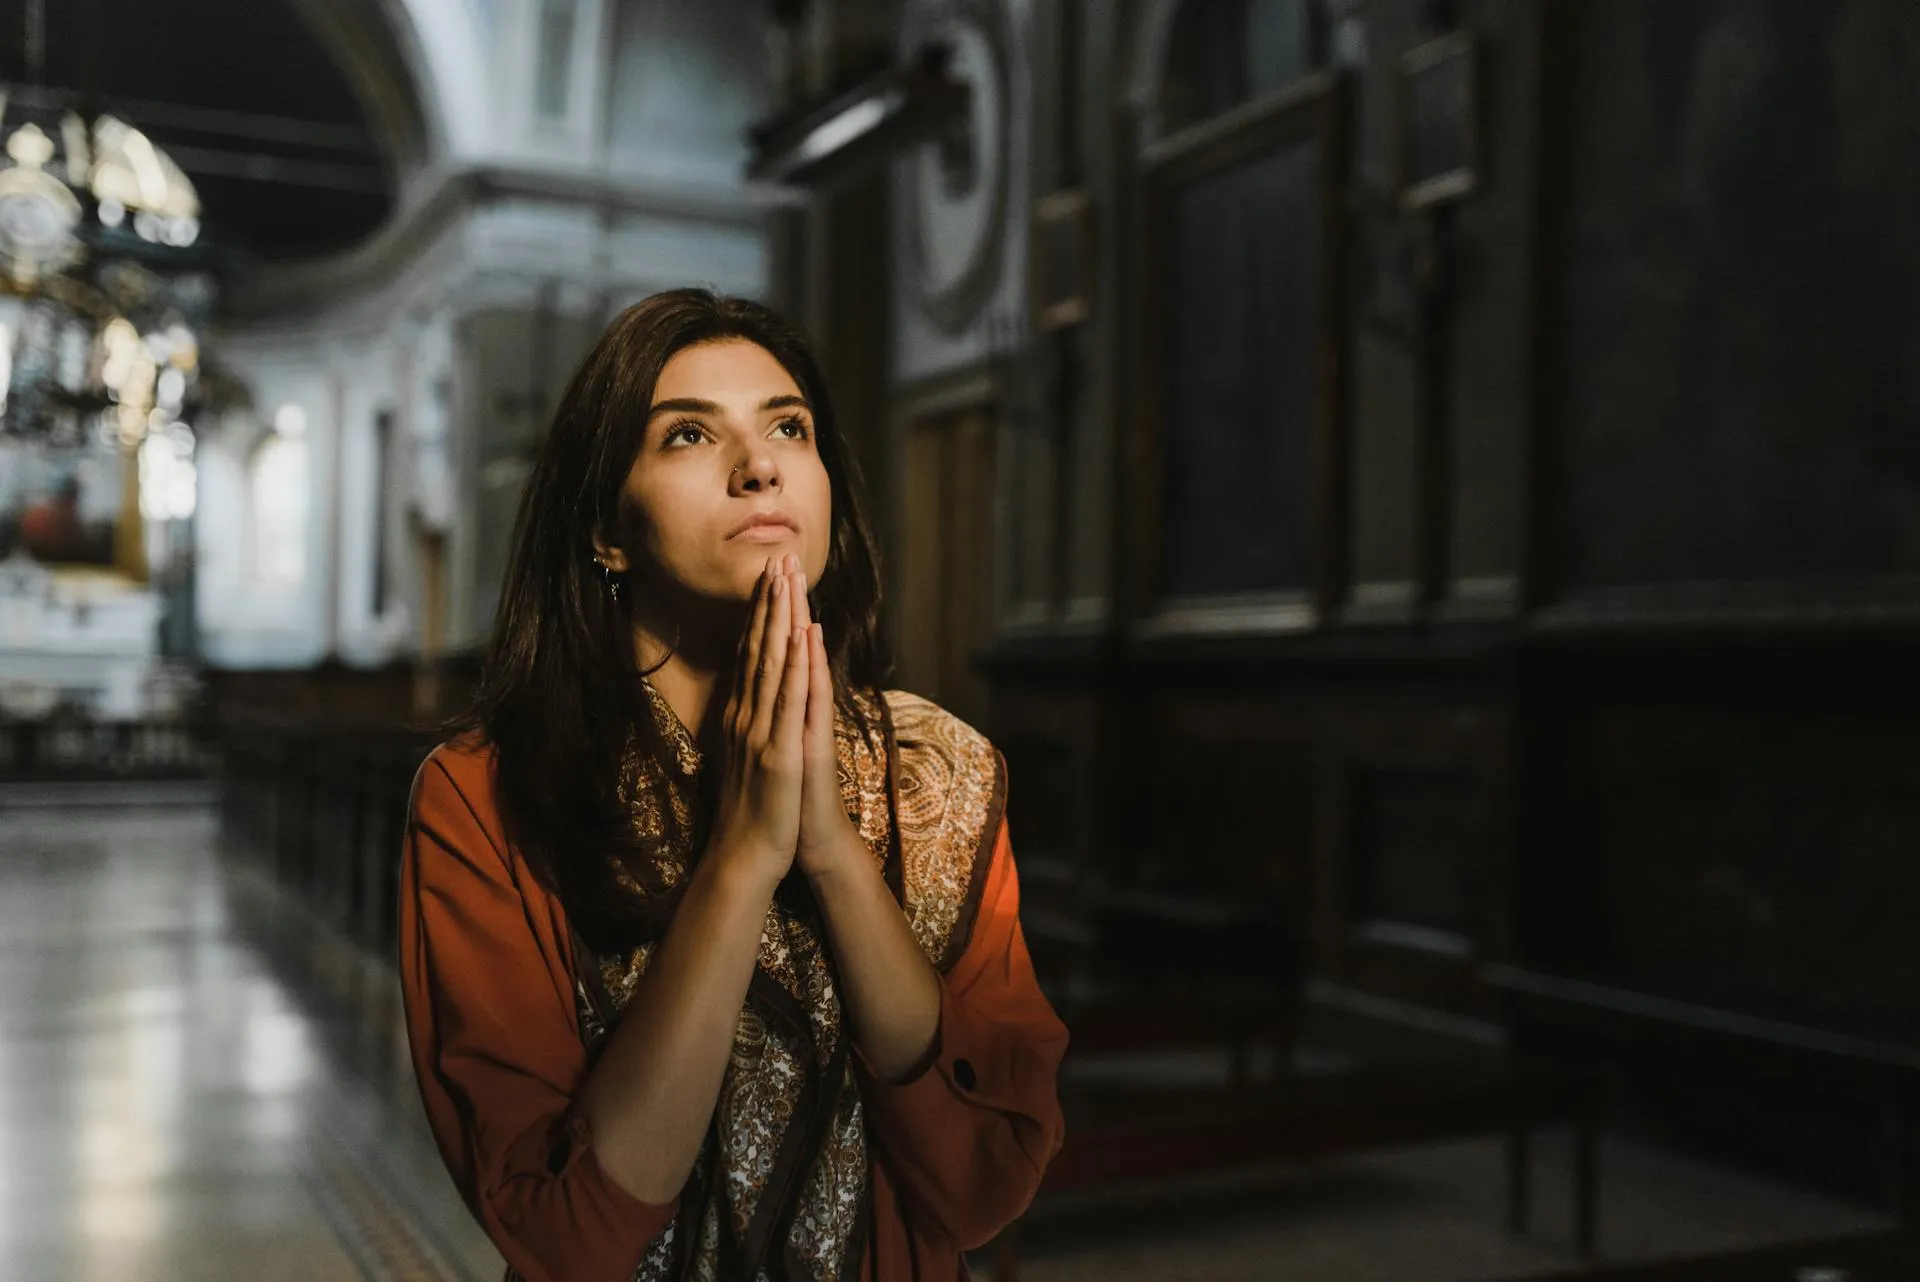 Imagen referencial de una mujer rezando.?w=200&h=150